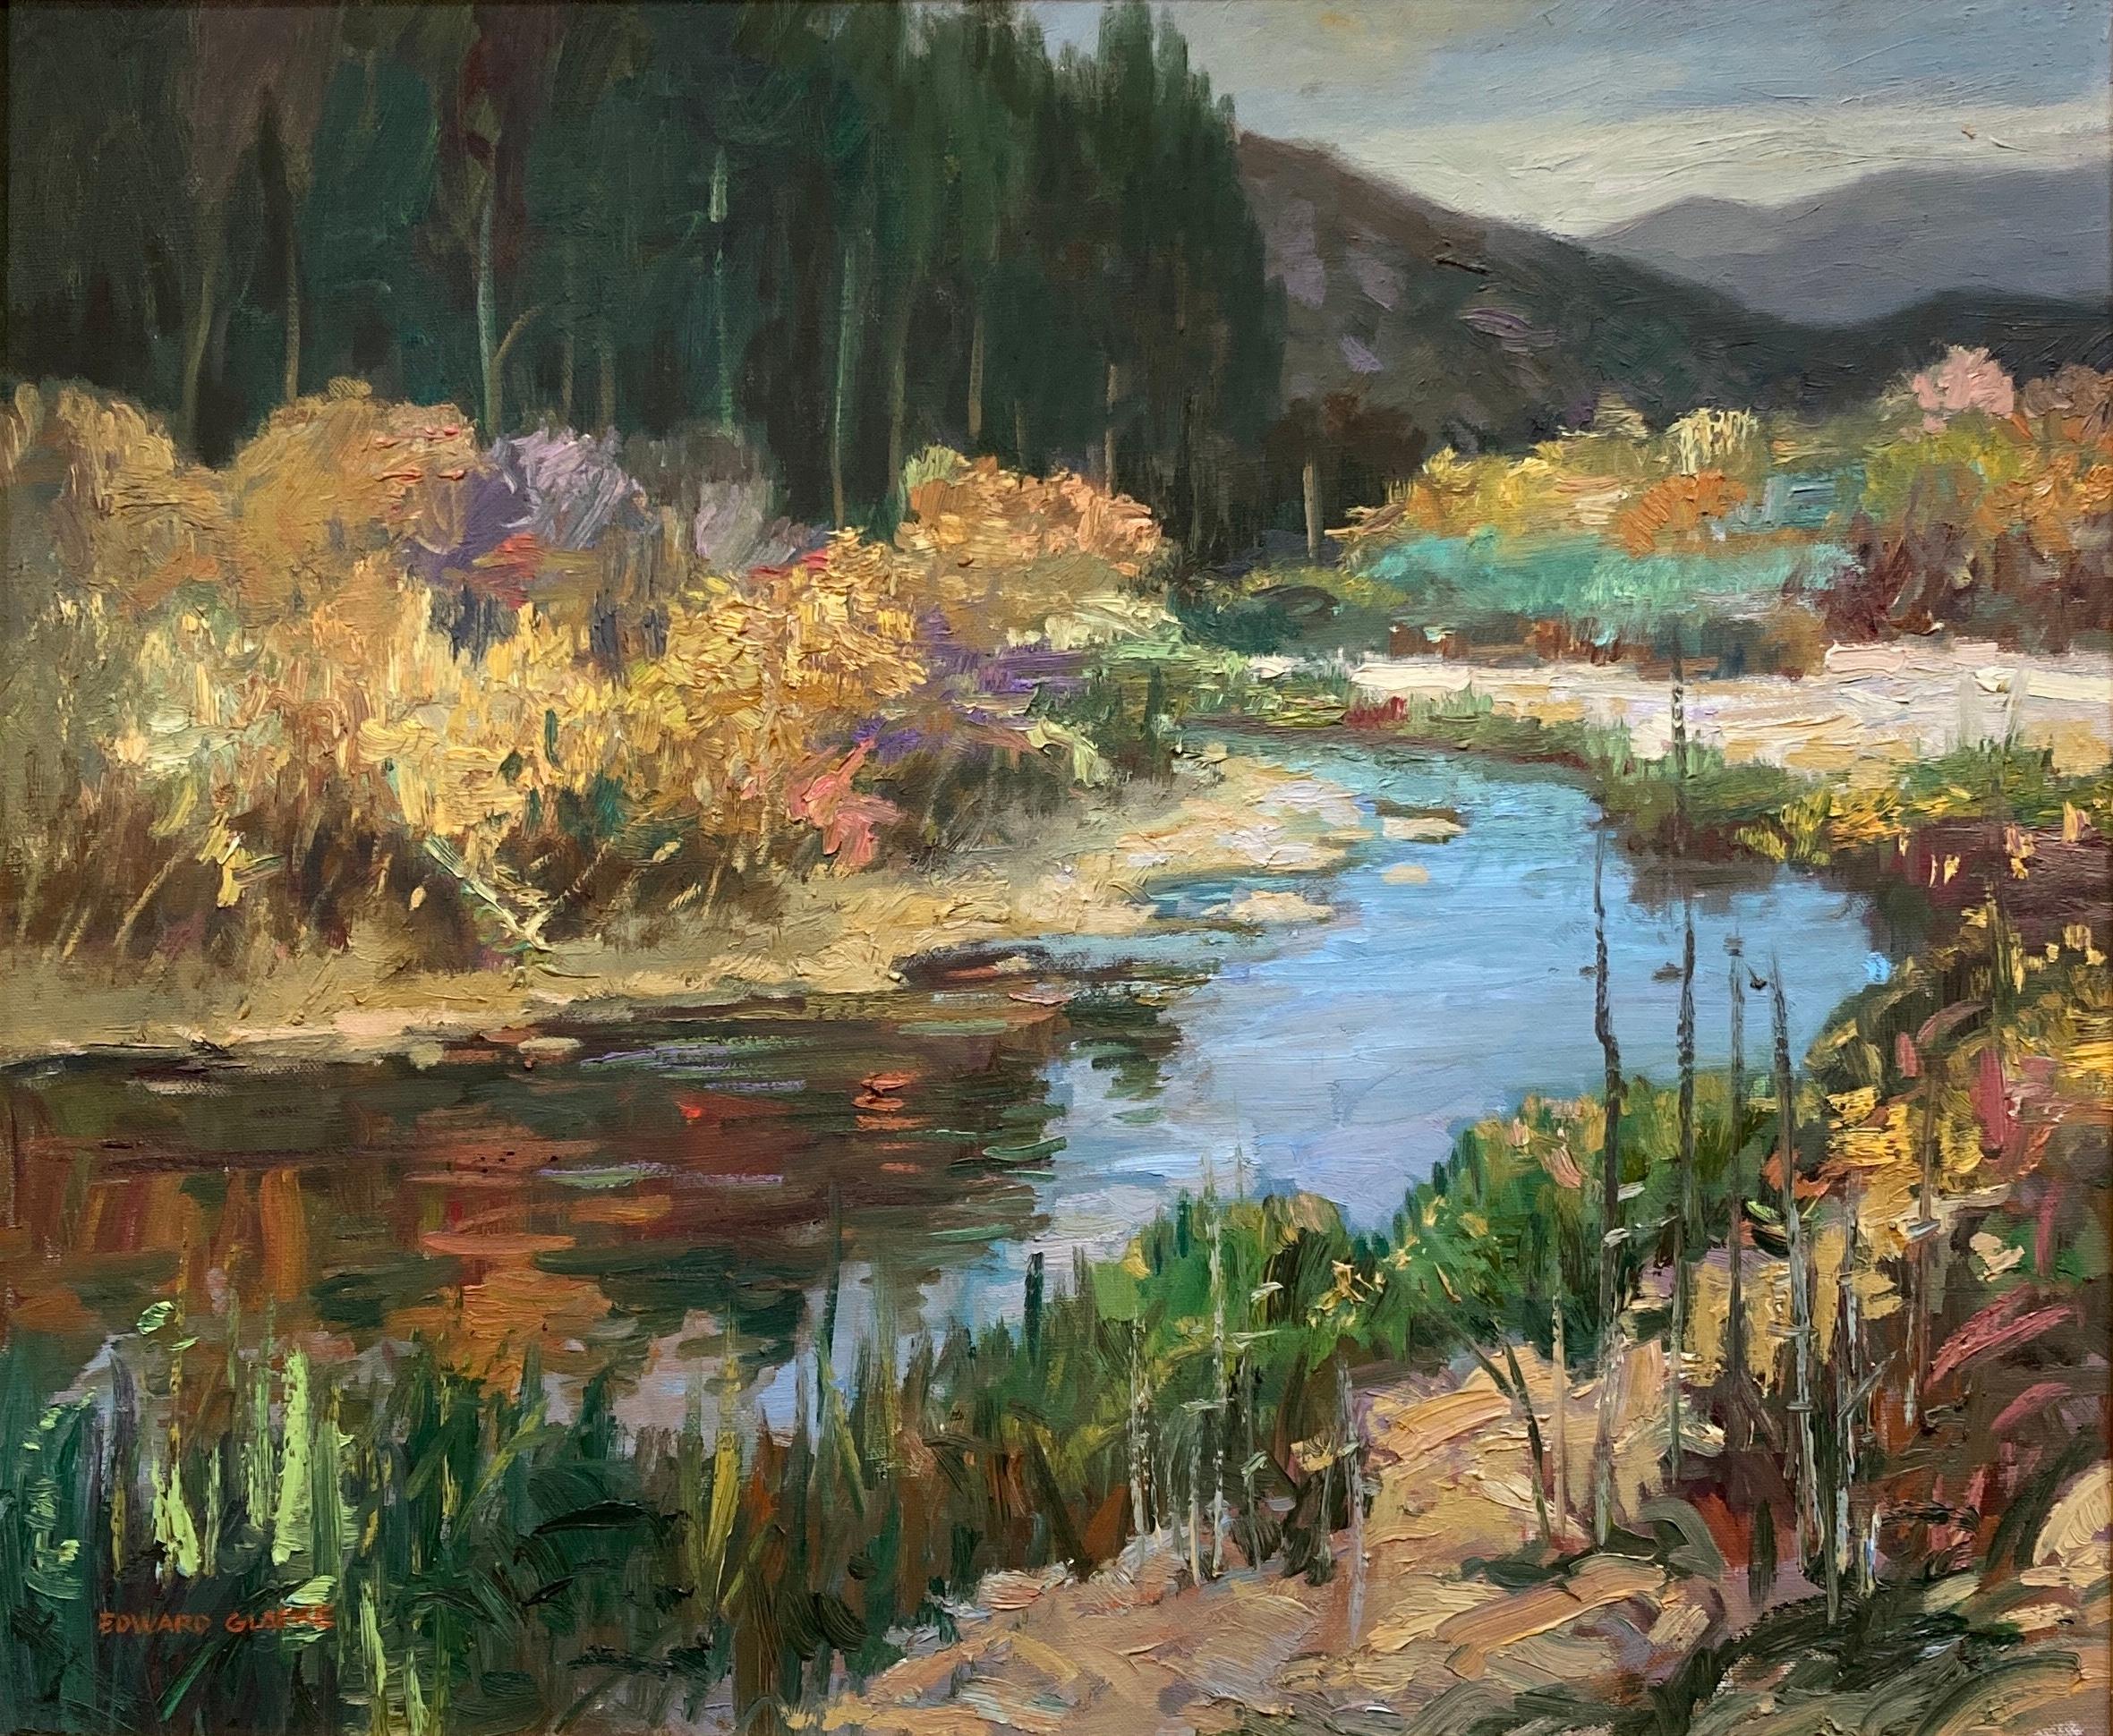 Edward Glafke 'Carmel River' Impressionist Landscape Painting For Sale 1